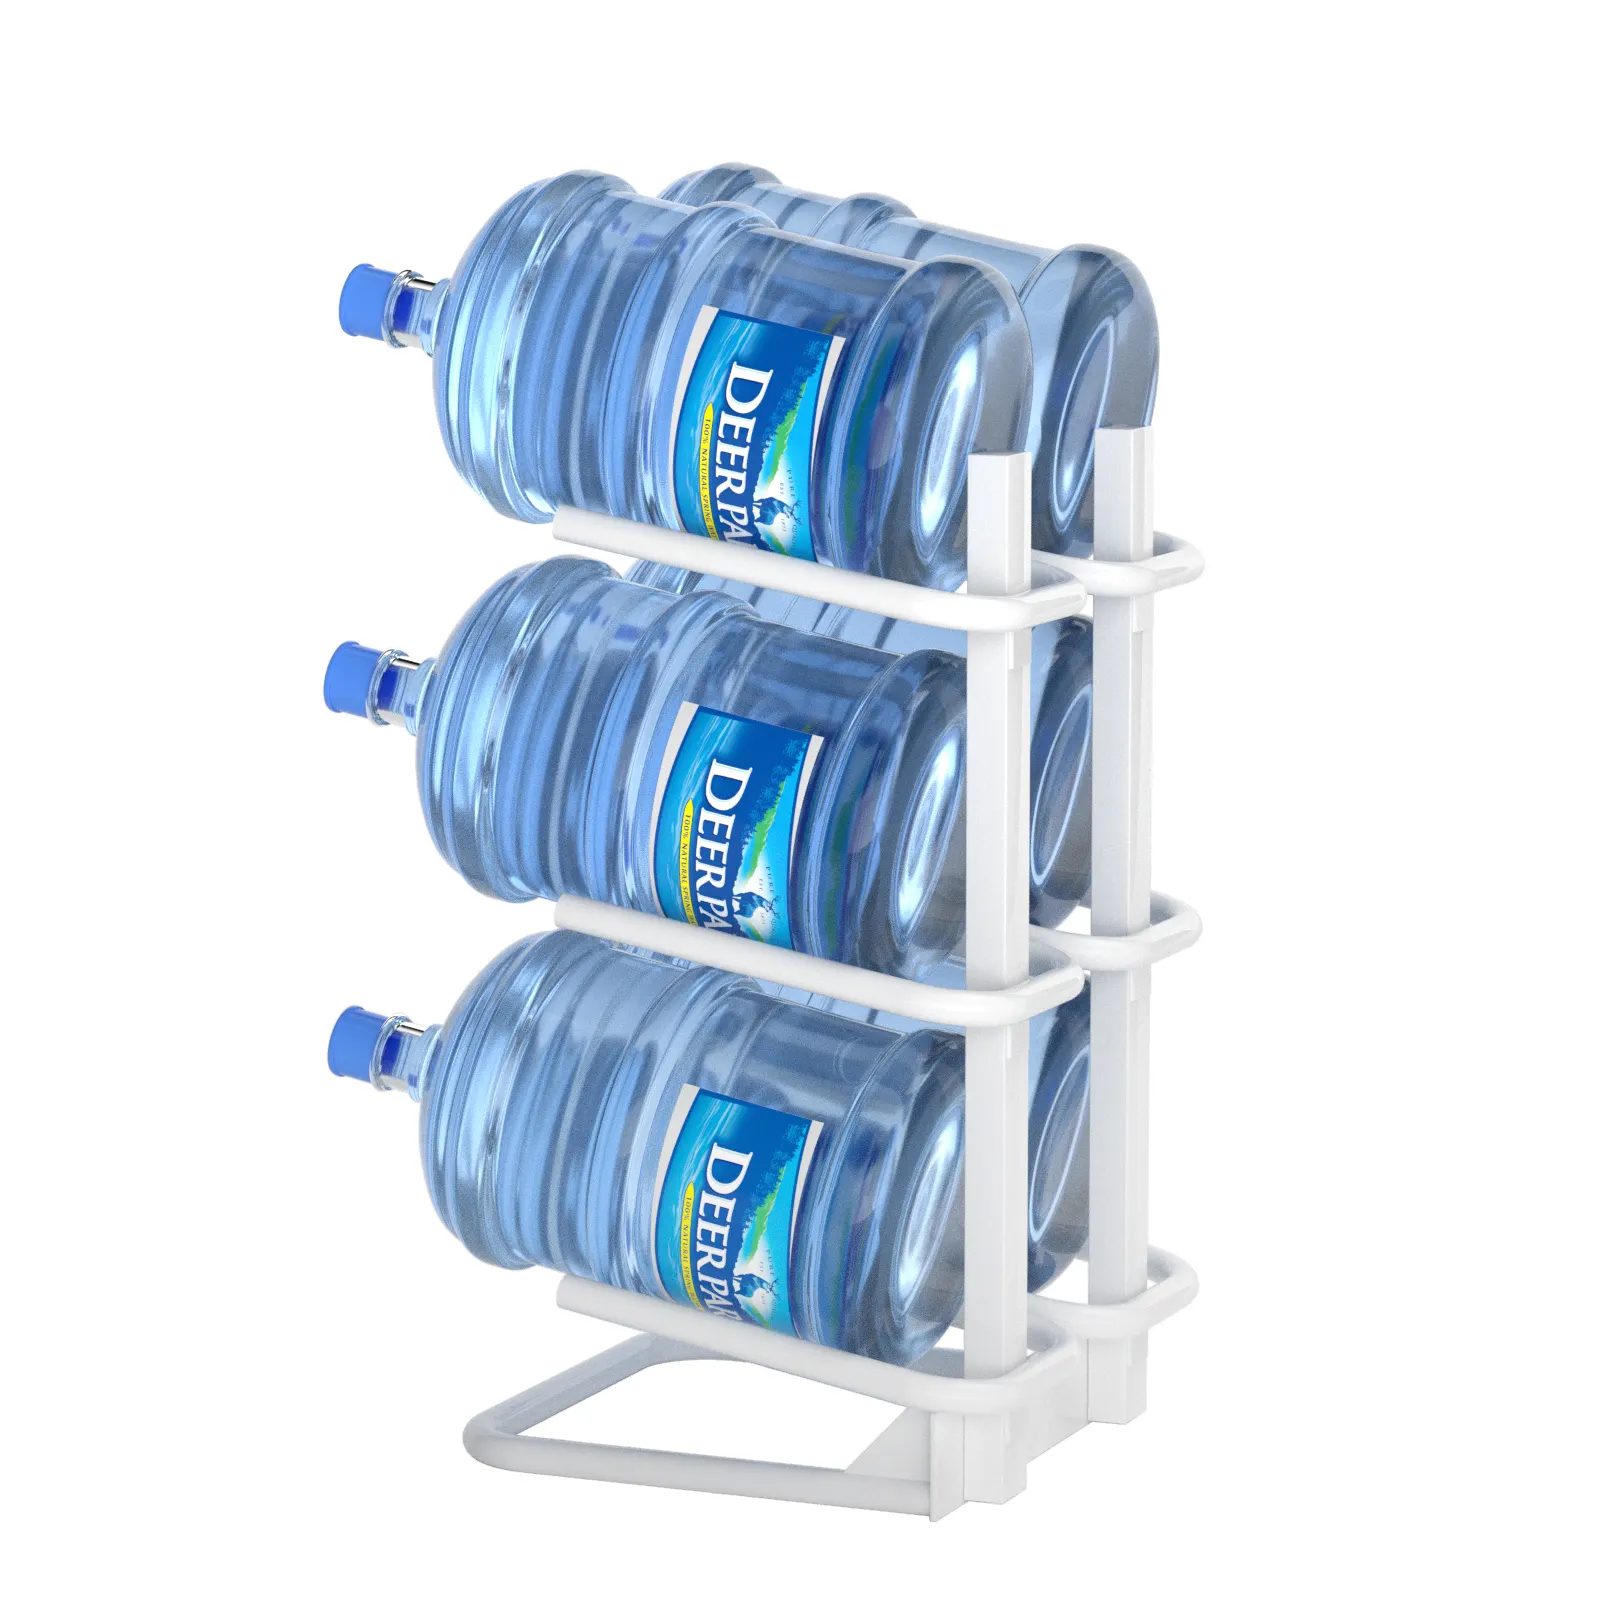 Porte-bouteilles en métal empilable sur pied, 3 niveaux, 5 gallons, support de rangement pour distributeur d'eau, organisateur